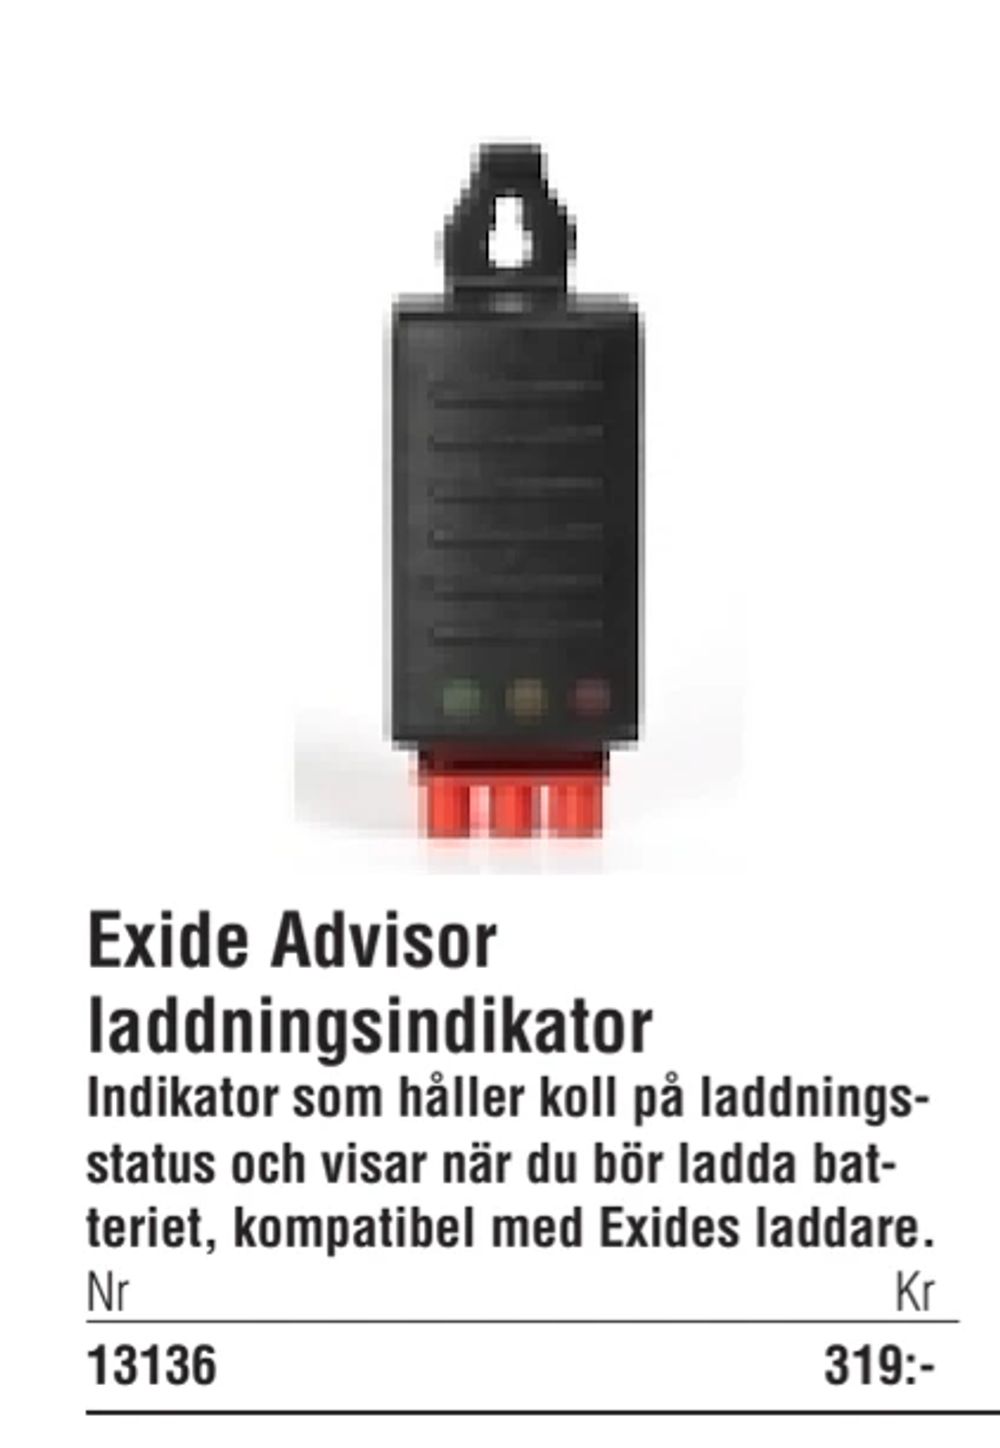 Erbjudanden på Exide Advisor laddningsindikator från Erlandsons Brygga för 319 kr